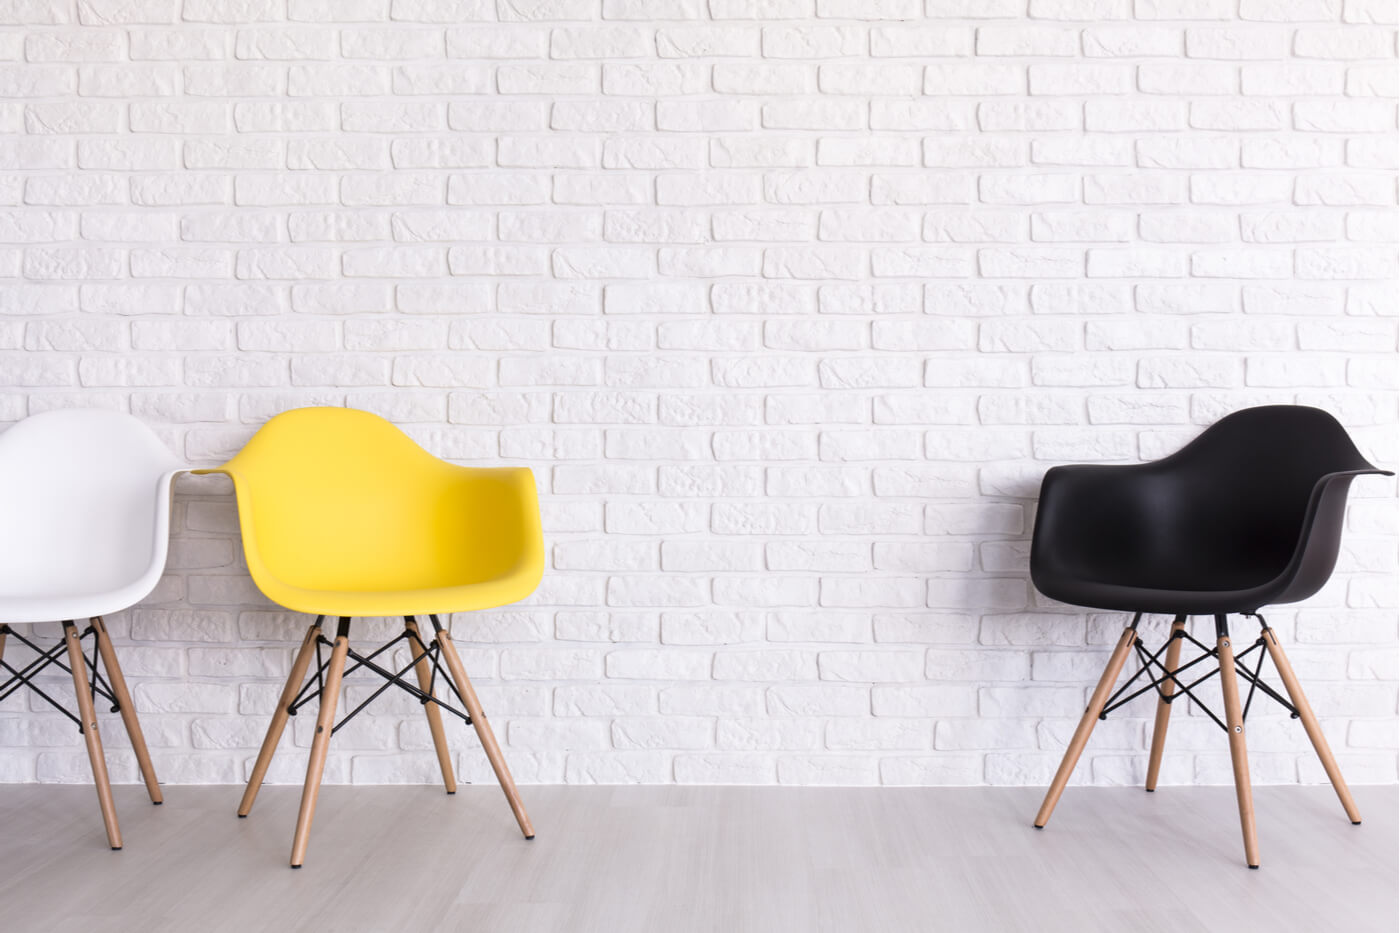 La silla Scand, un producto sencillo para el hogar